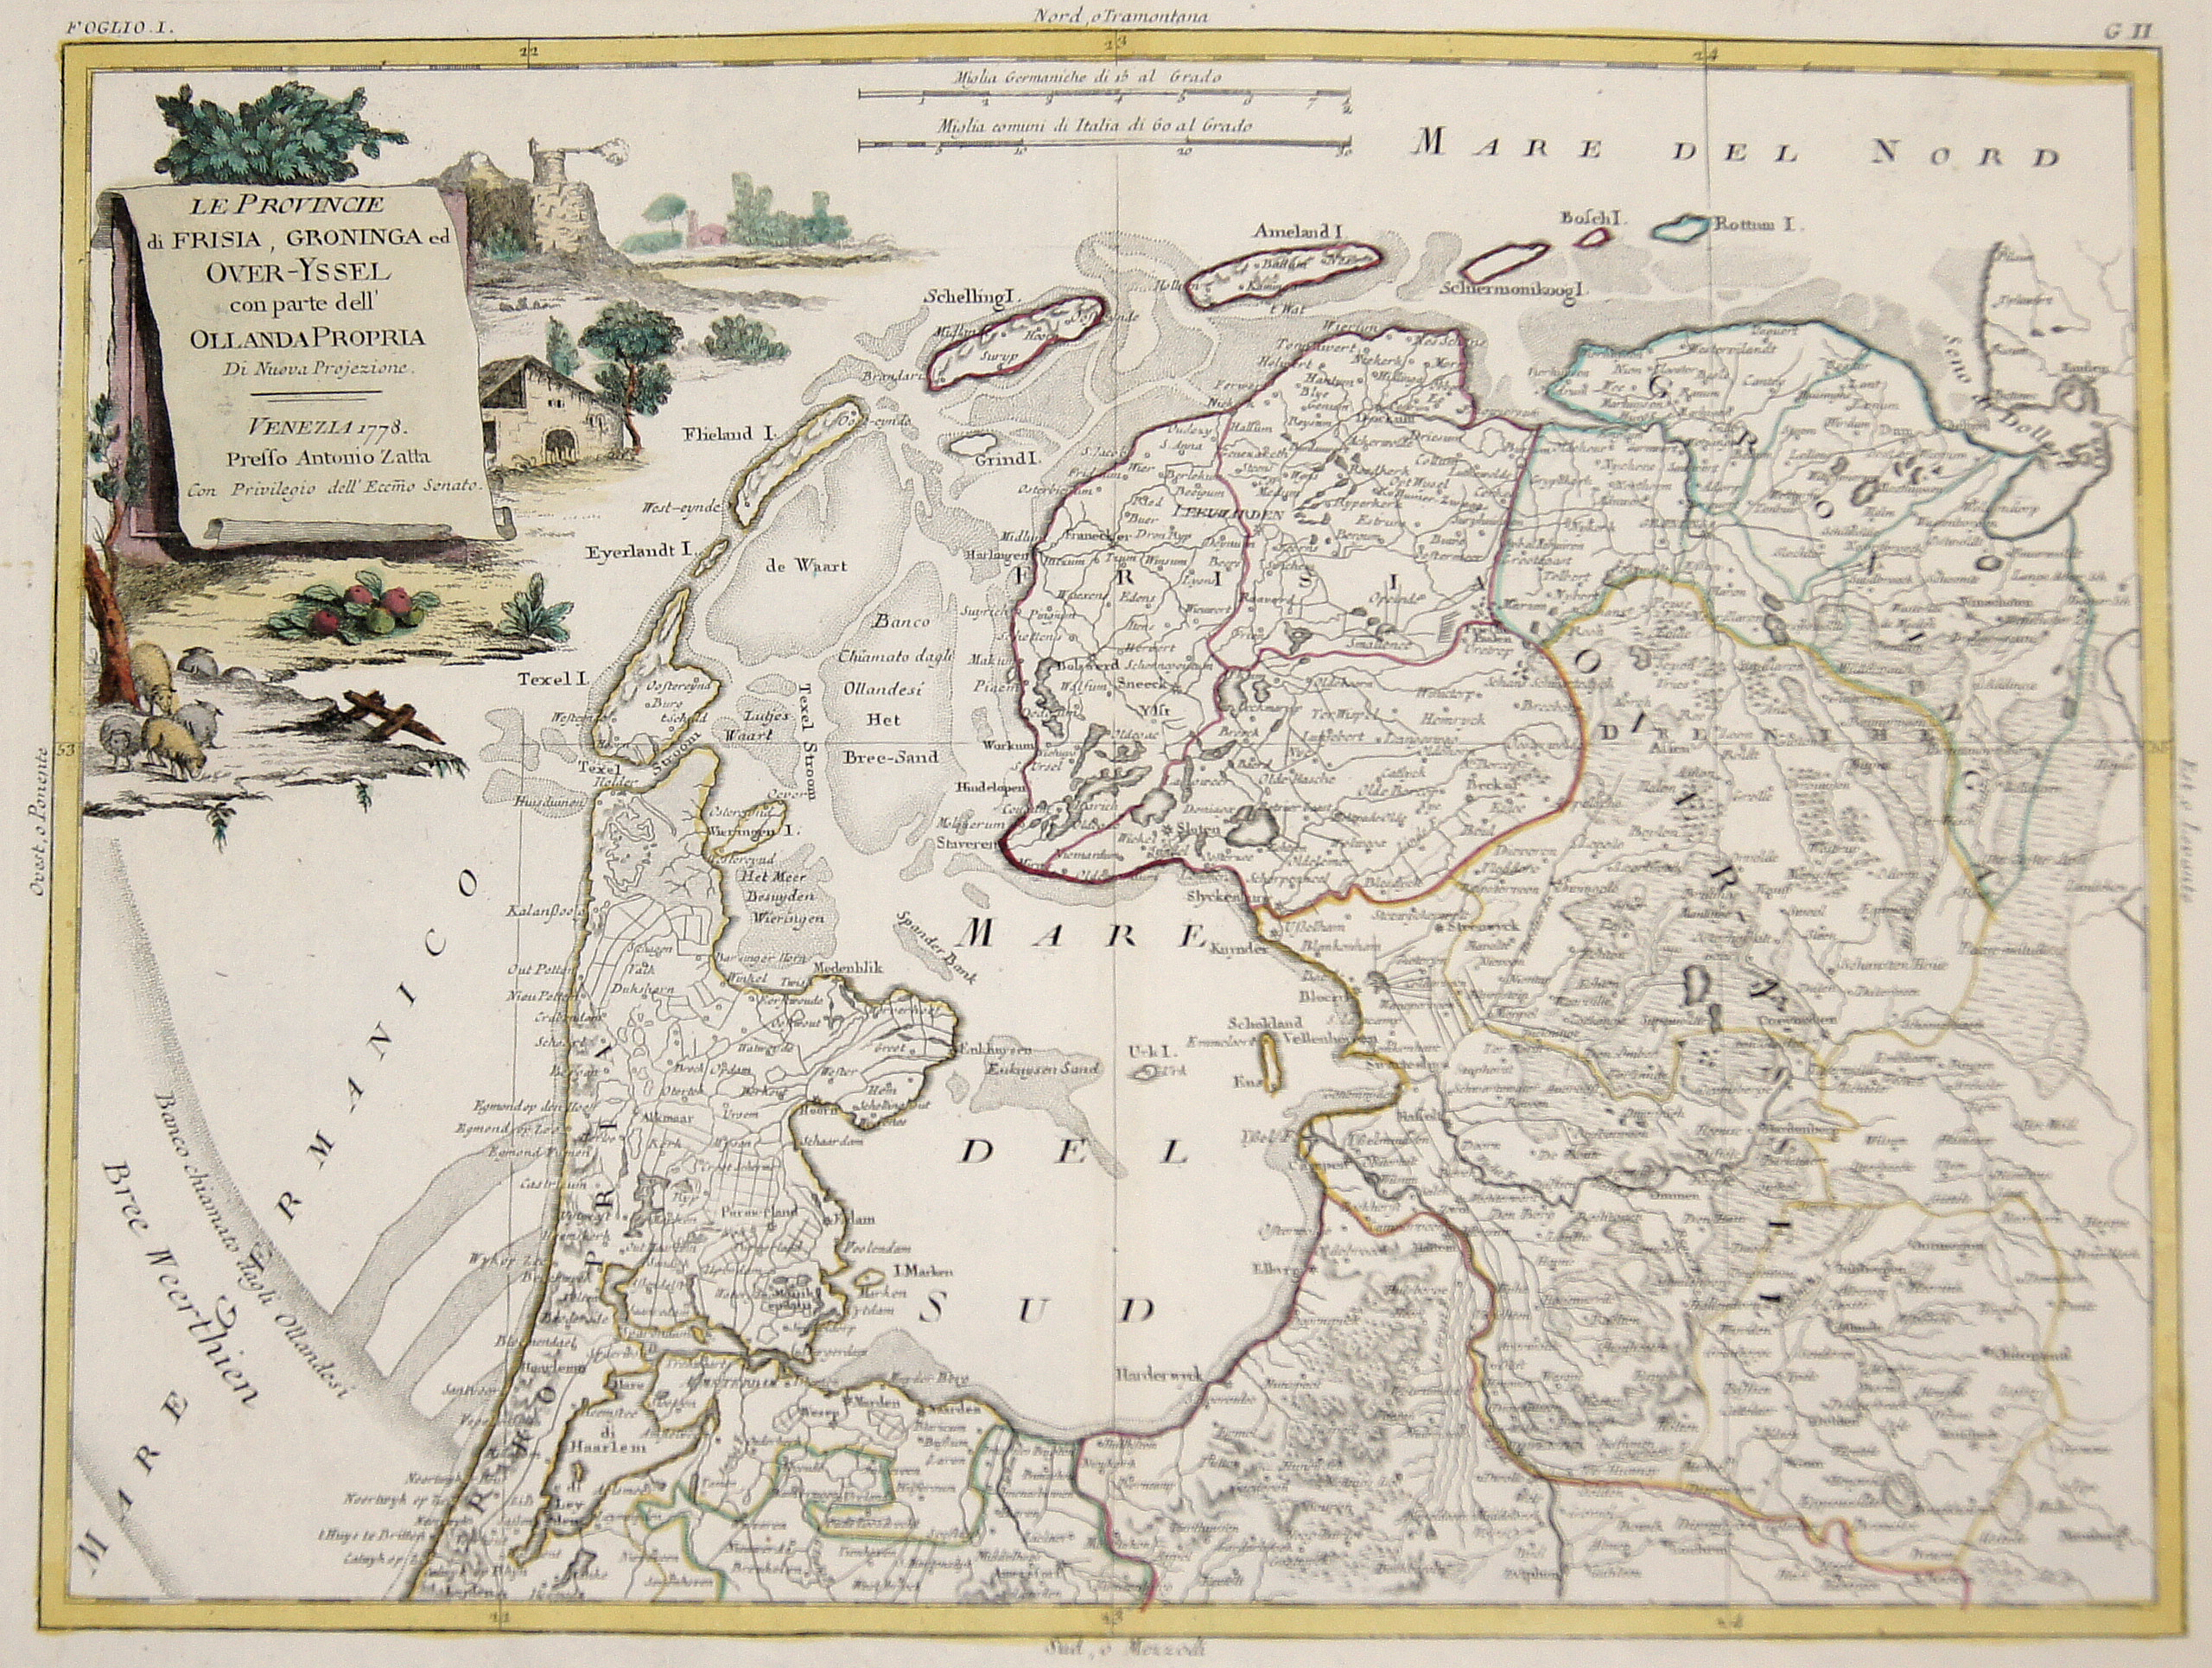 Zatta  Le Provincie di Frisia, Groninga ed Over-Yssel con parte dell’ Ollanda Propria